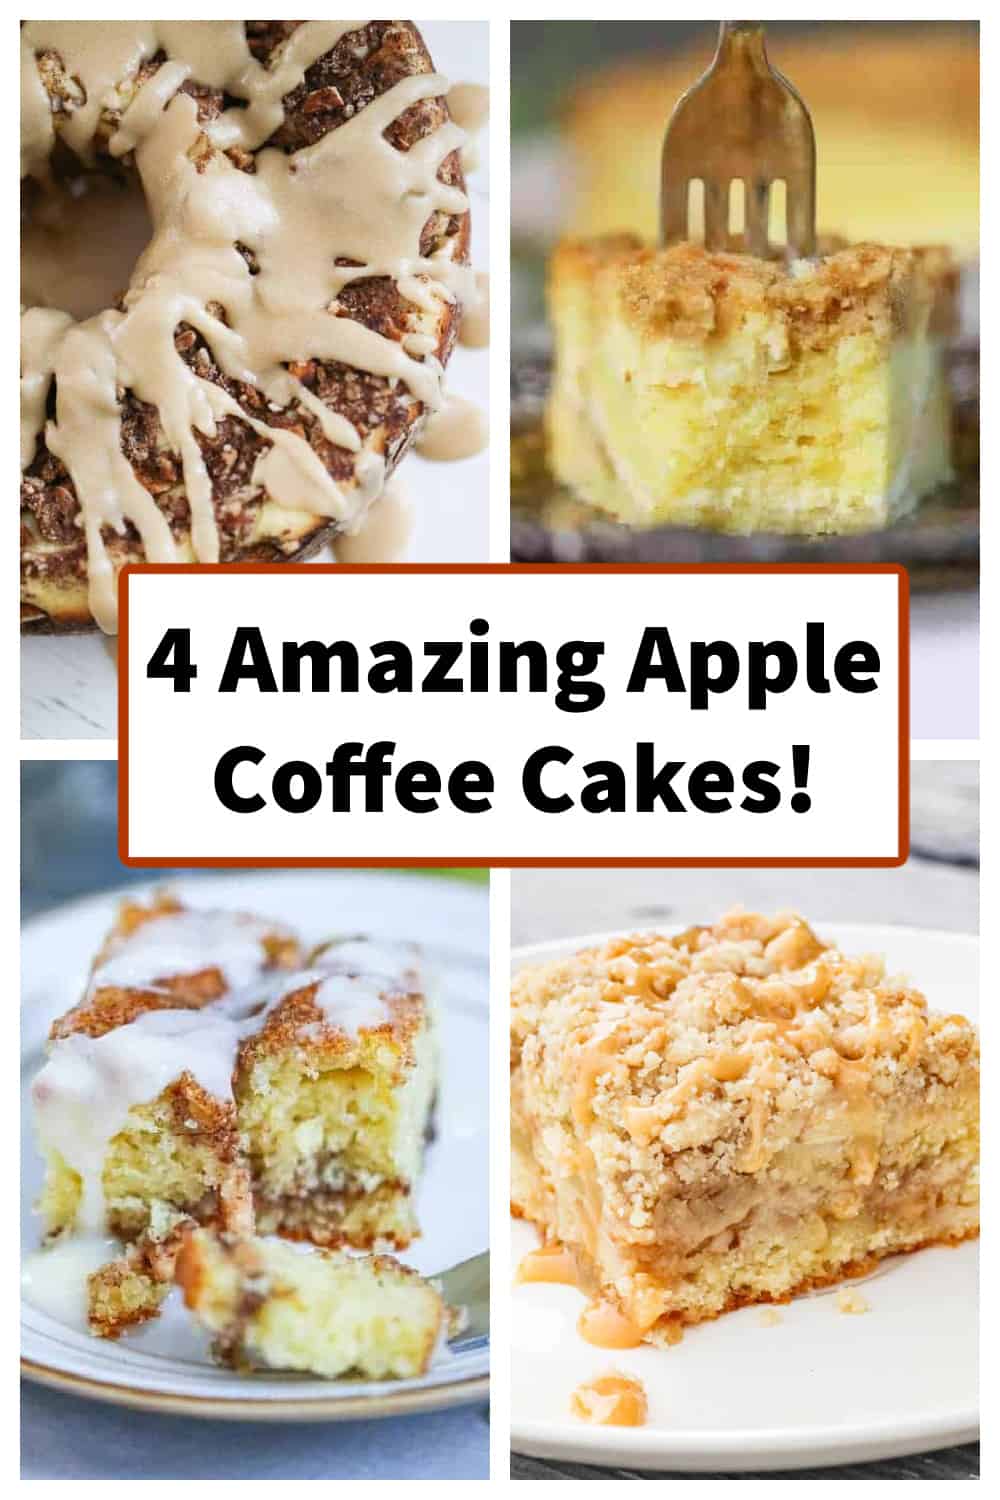 4 Amazing Apple Coffee Cakes